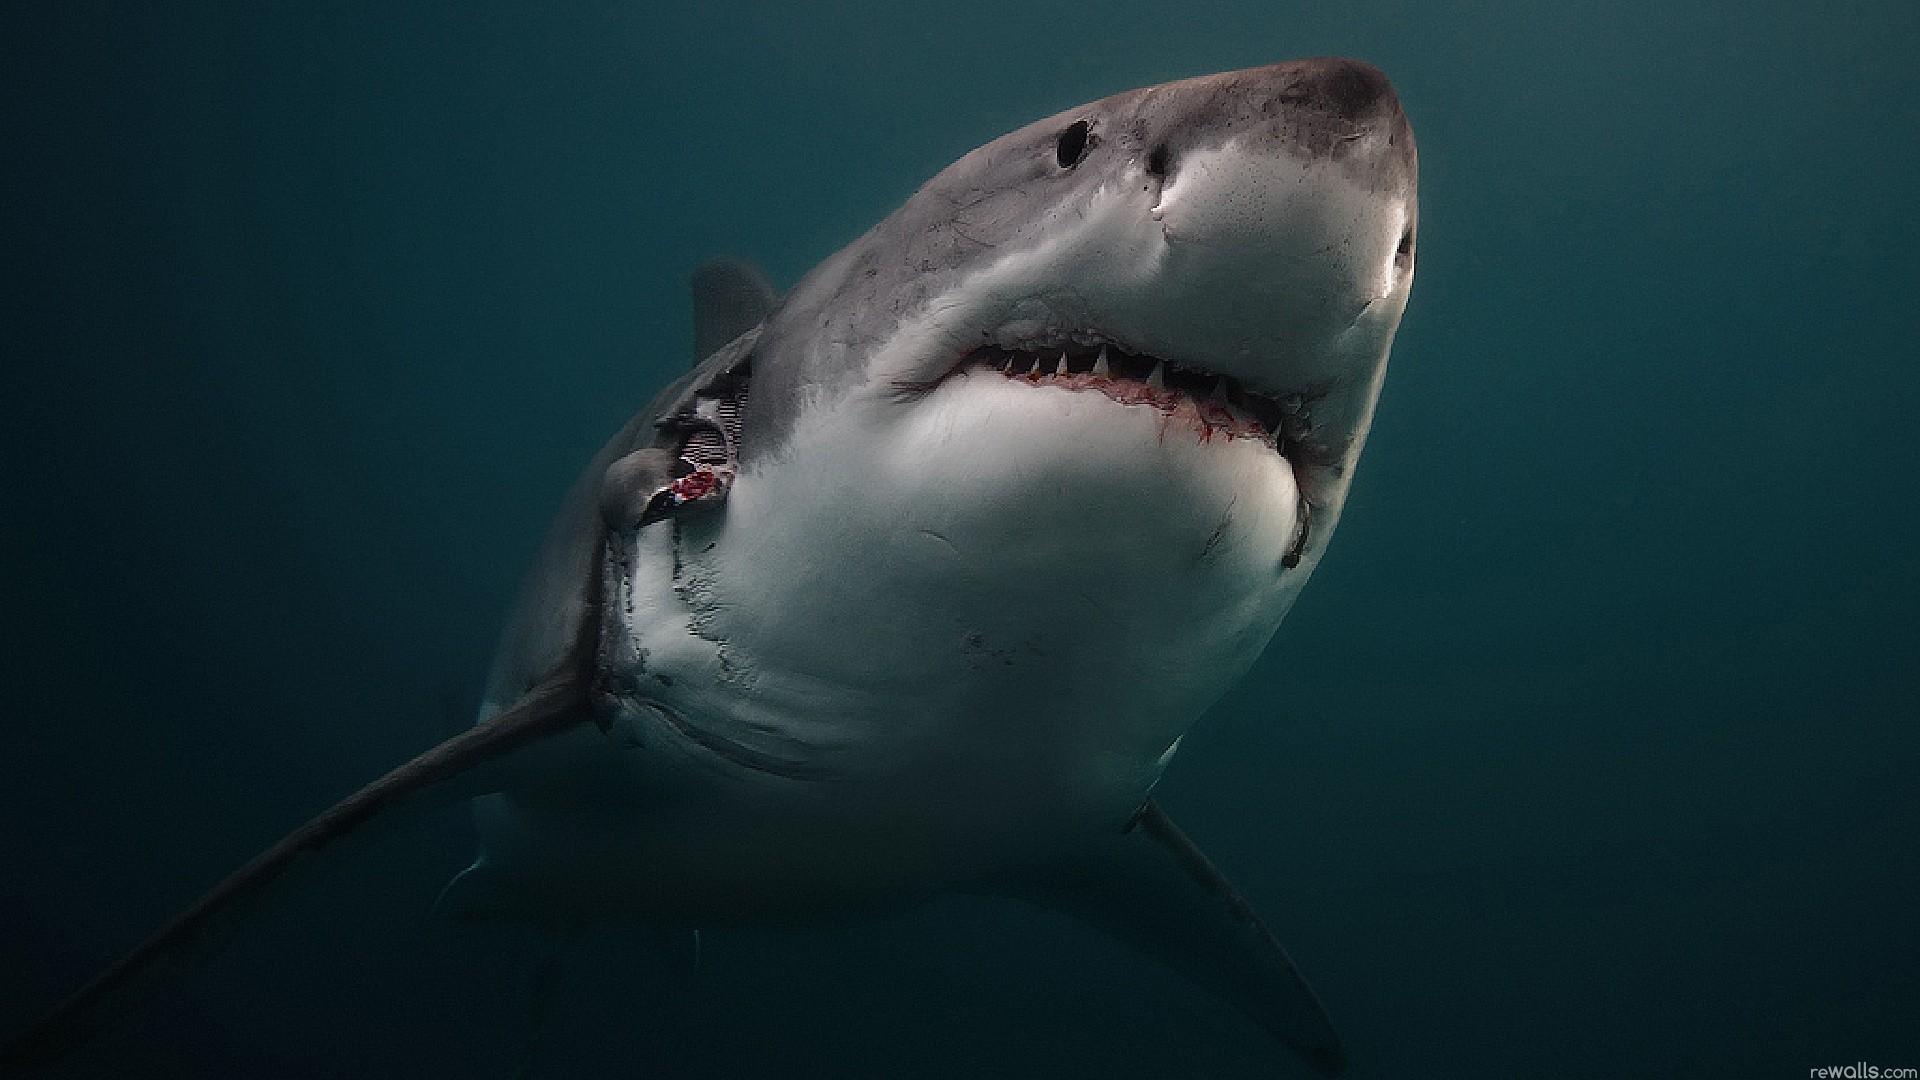 澳洲拍到鲨鱼攻击海豚罕见画面